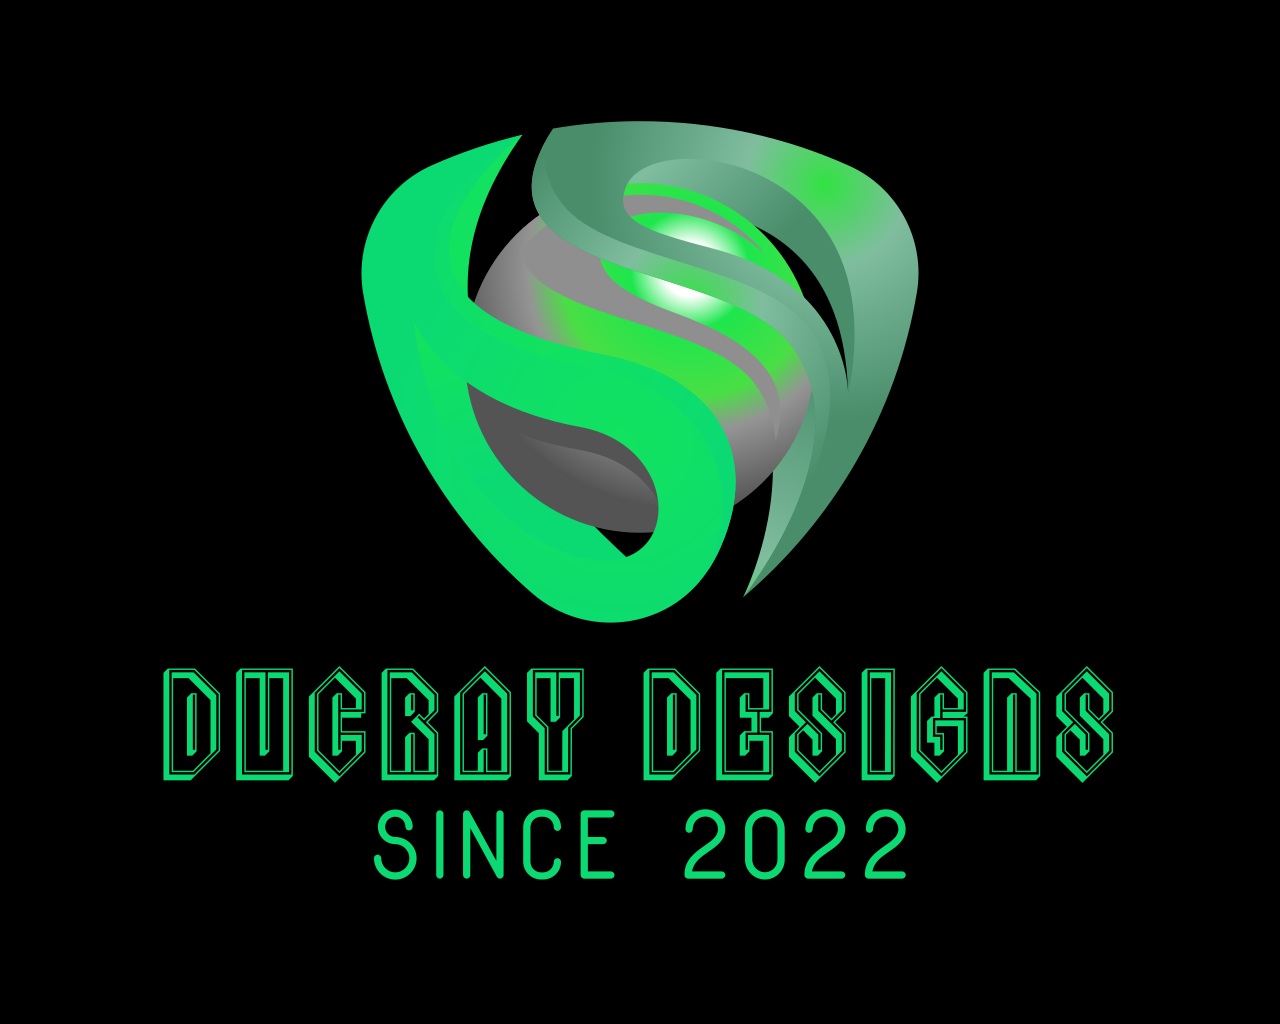 ducraydesigns